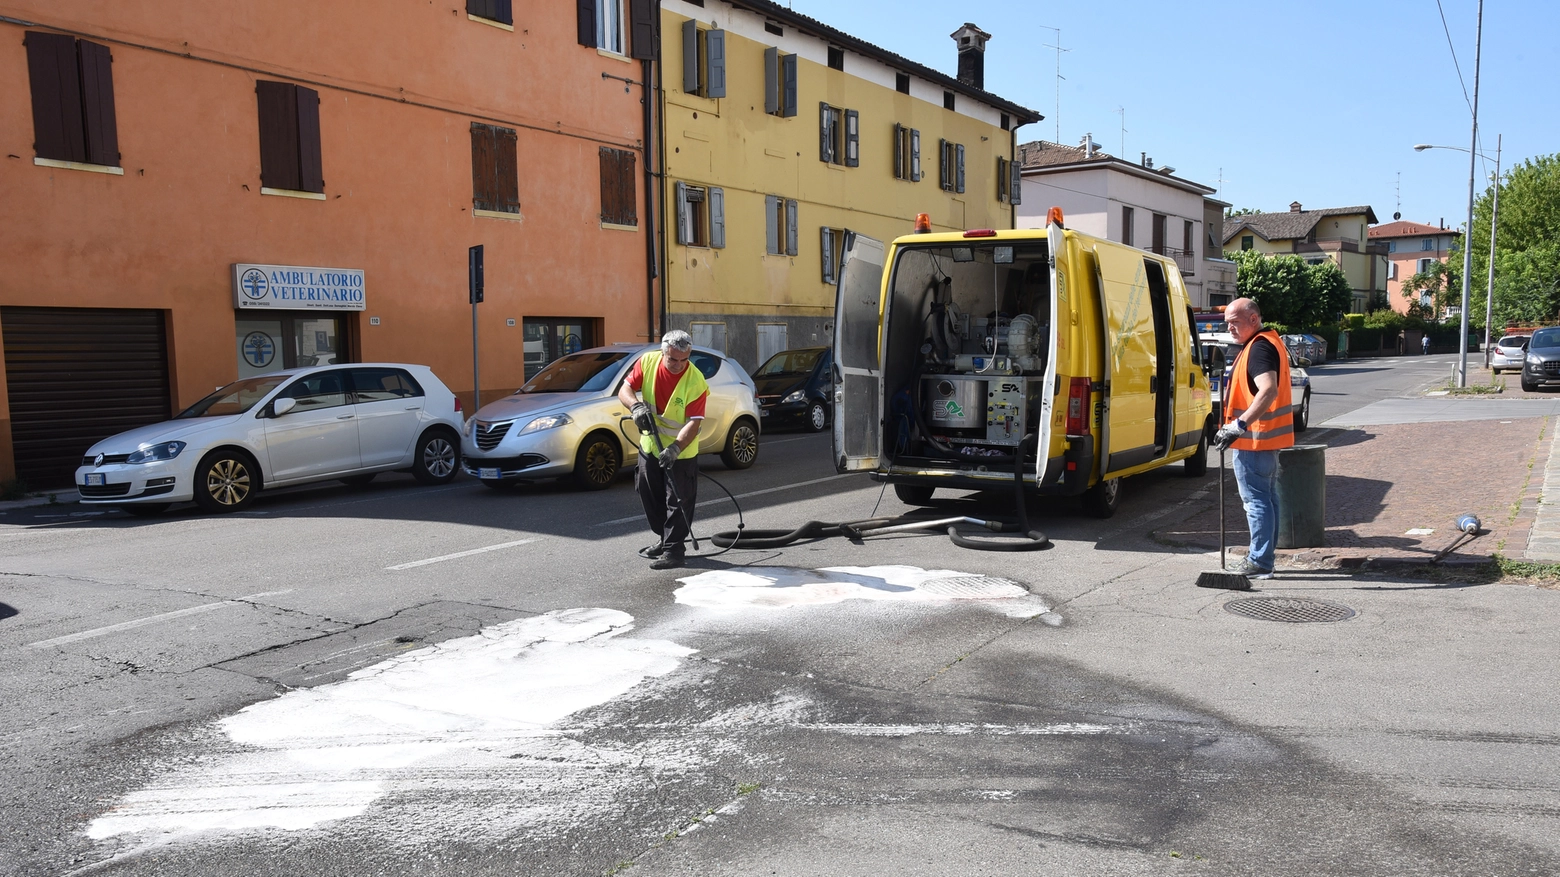 Via San Cataldo, il punto dove è accaduto l'incidente mortale (Foto Fiocchi)